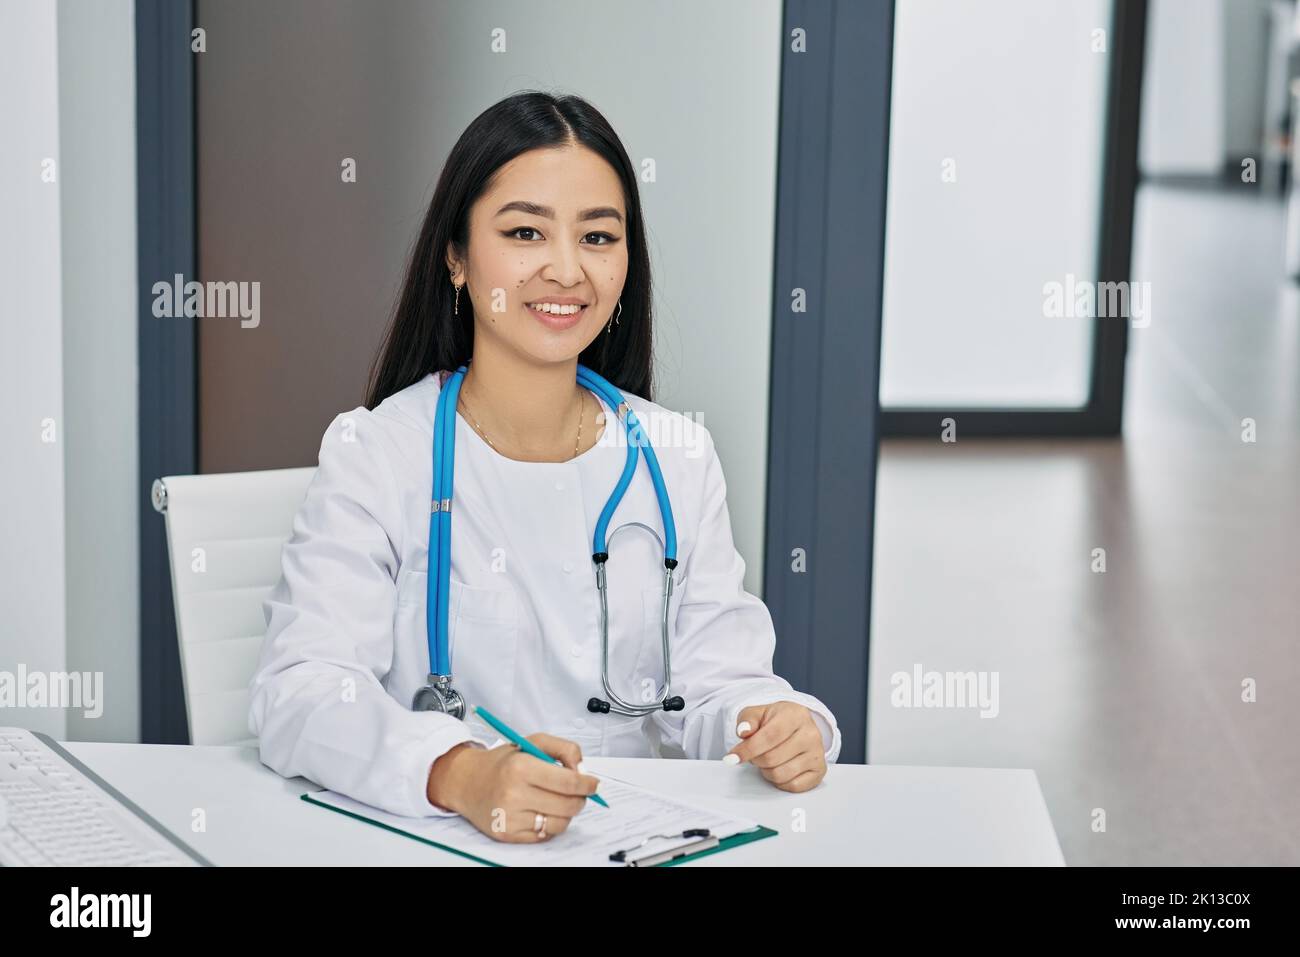 profession de médecin. Généraliste coréenne souriante assise sur son lieu de travail portant un uniforme médical Banque D'Images